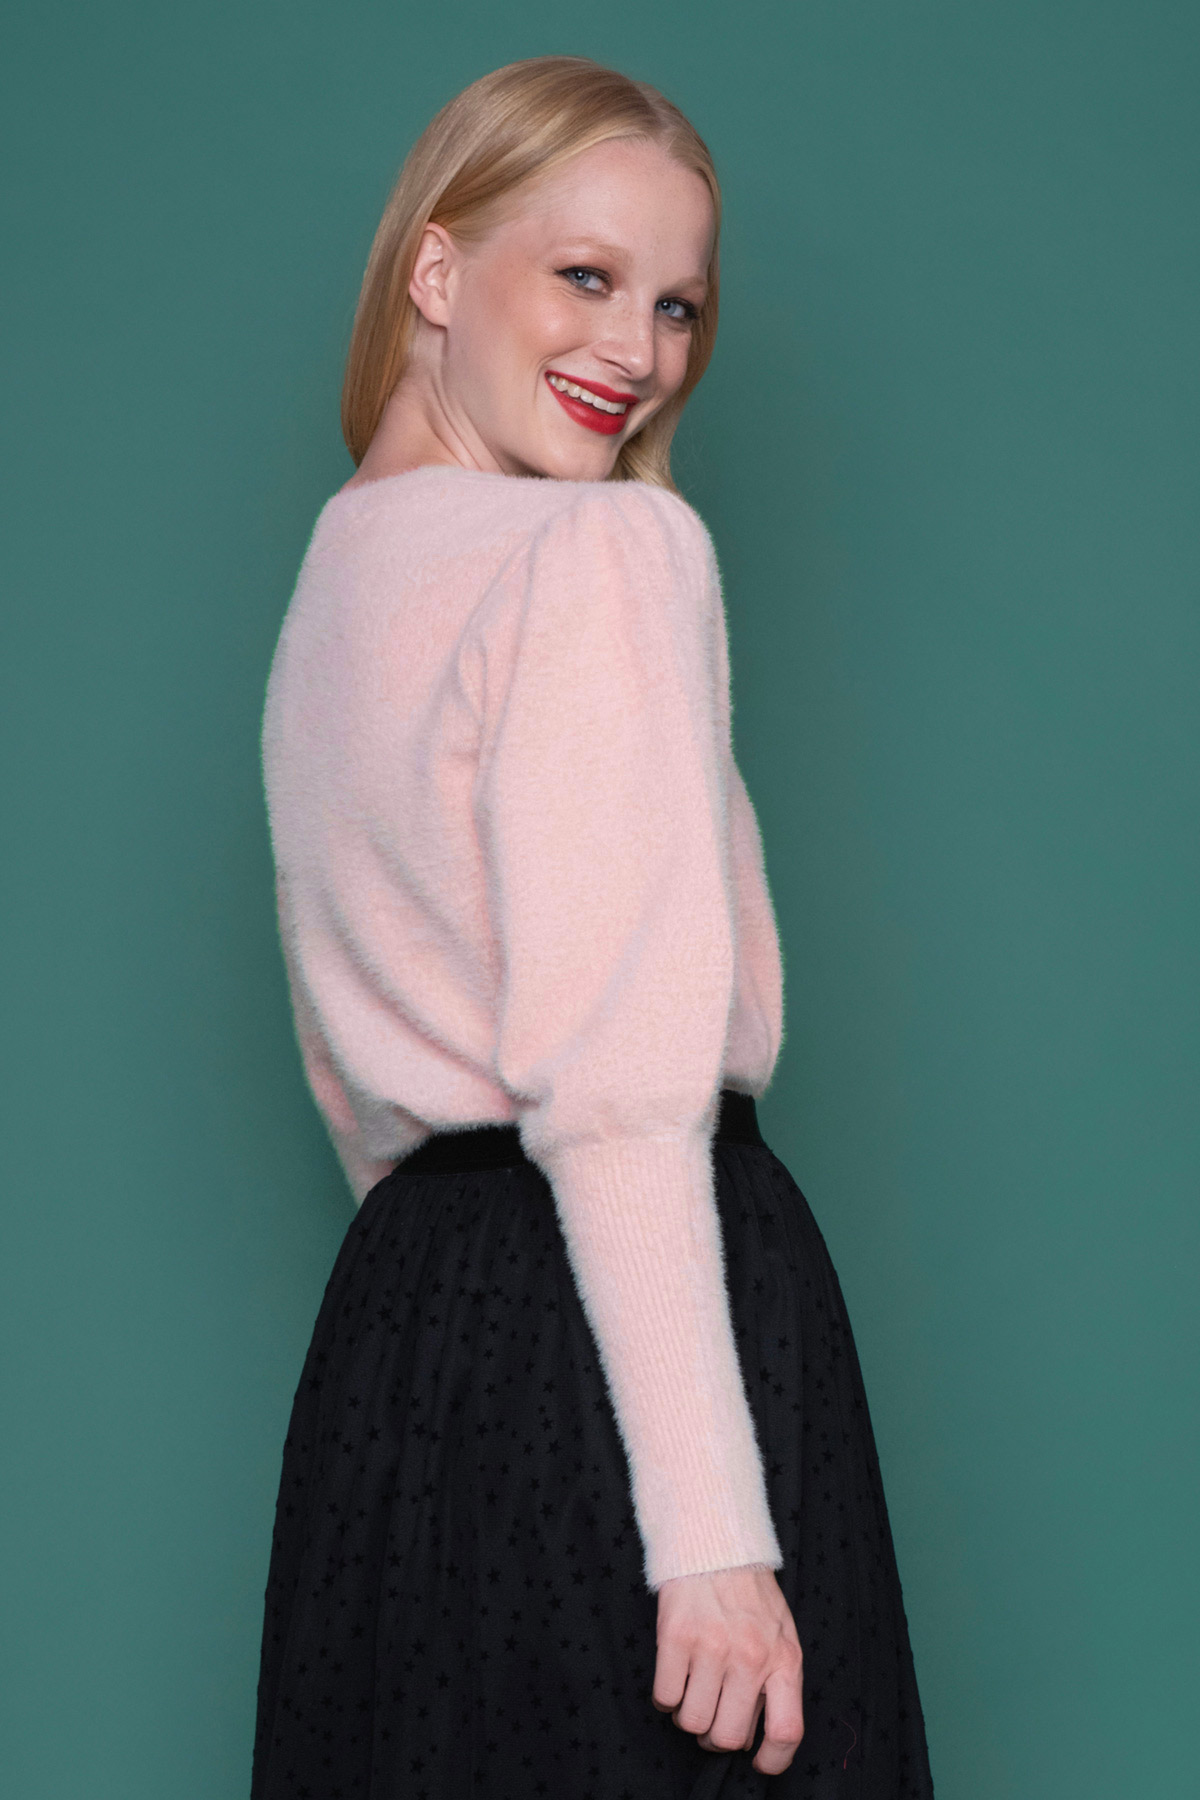 Δώστε μια chic πινελιά στο καθημερινό look με αυτό το ροζ πουλόβερ! Τα υπέροχα statement φουντωτά μανίκια που κλείνουν εφαρμοστά από τον αγκώνα και κάτω, μαζί με το μαλακό ύφασμα, θα το κάνουν το αγαπημένο σας για τη σεζόν.